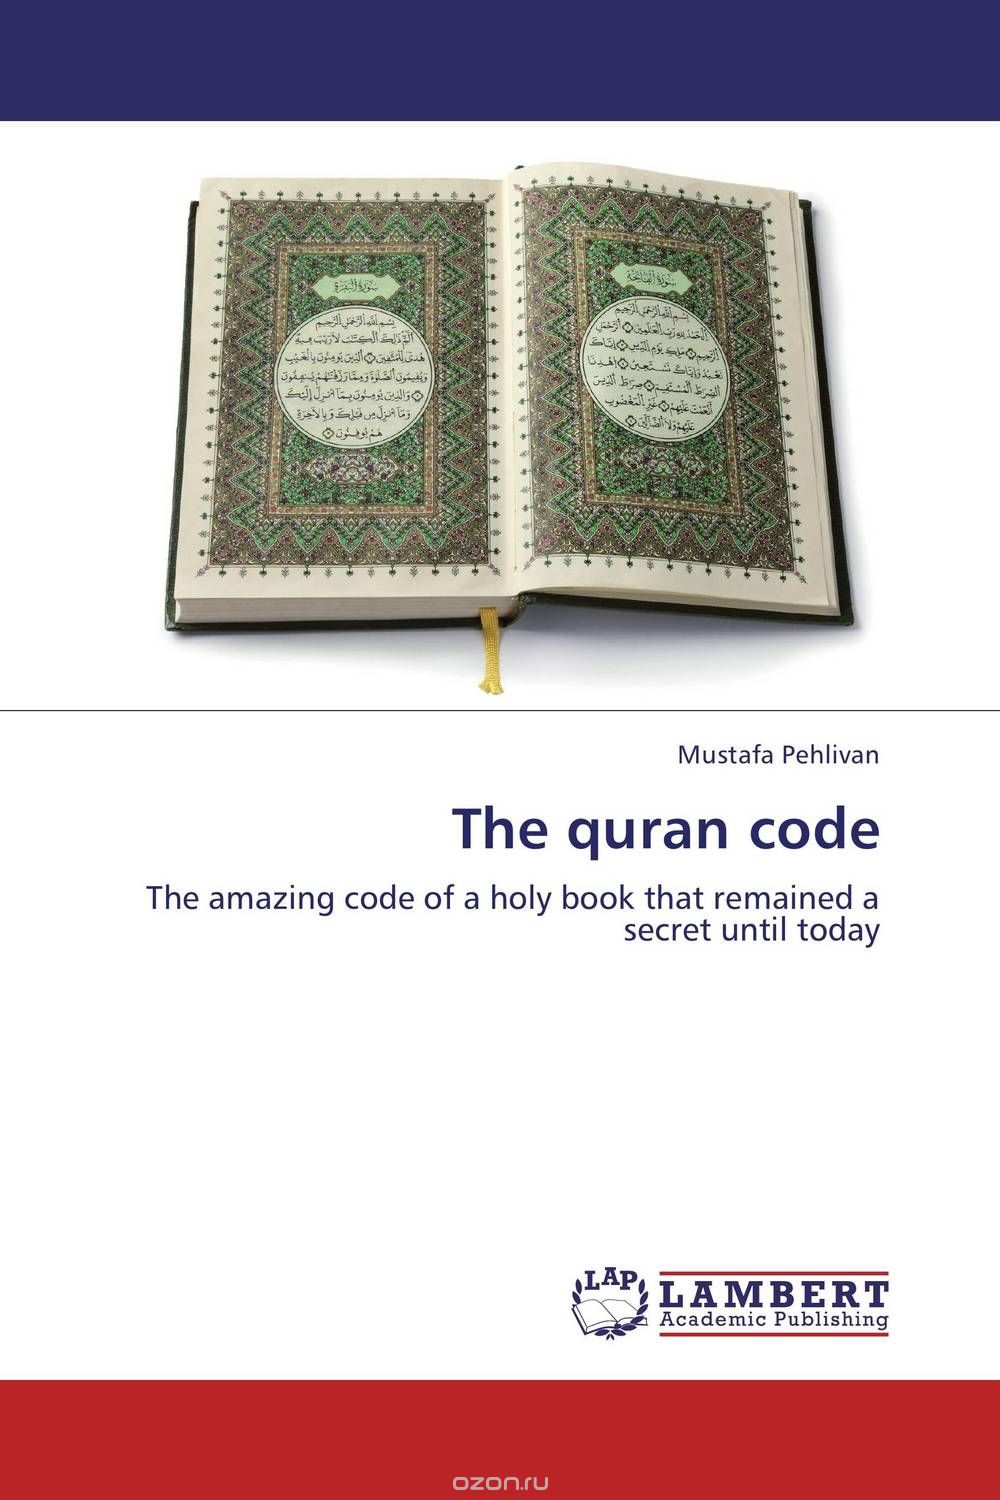 Скачать книгу "The quran code"